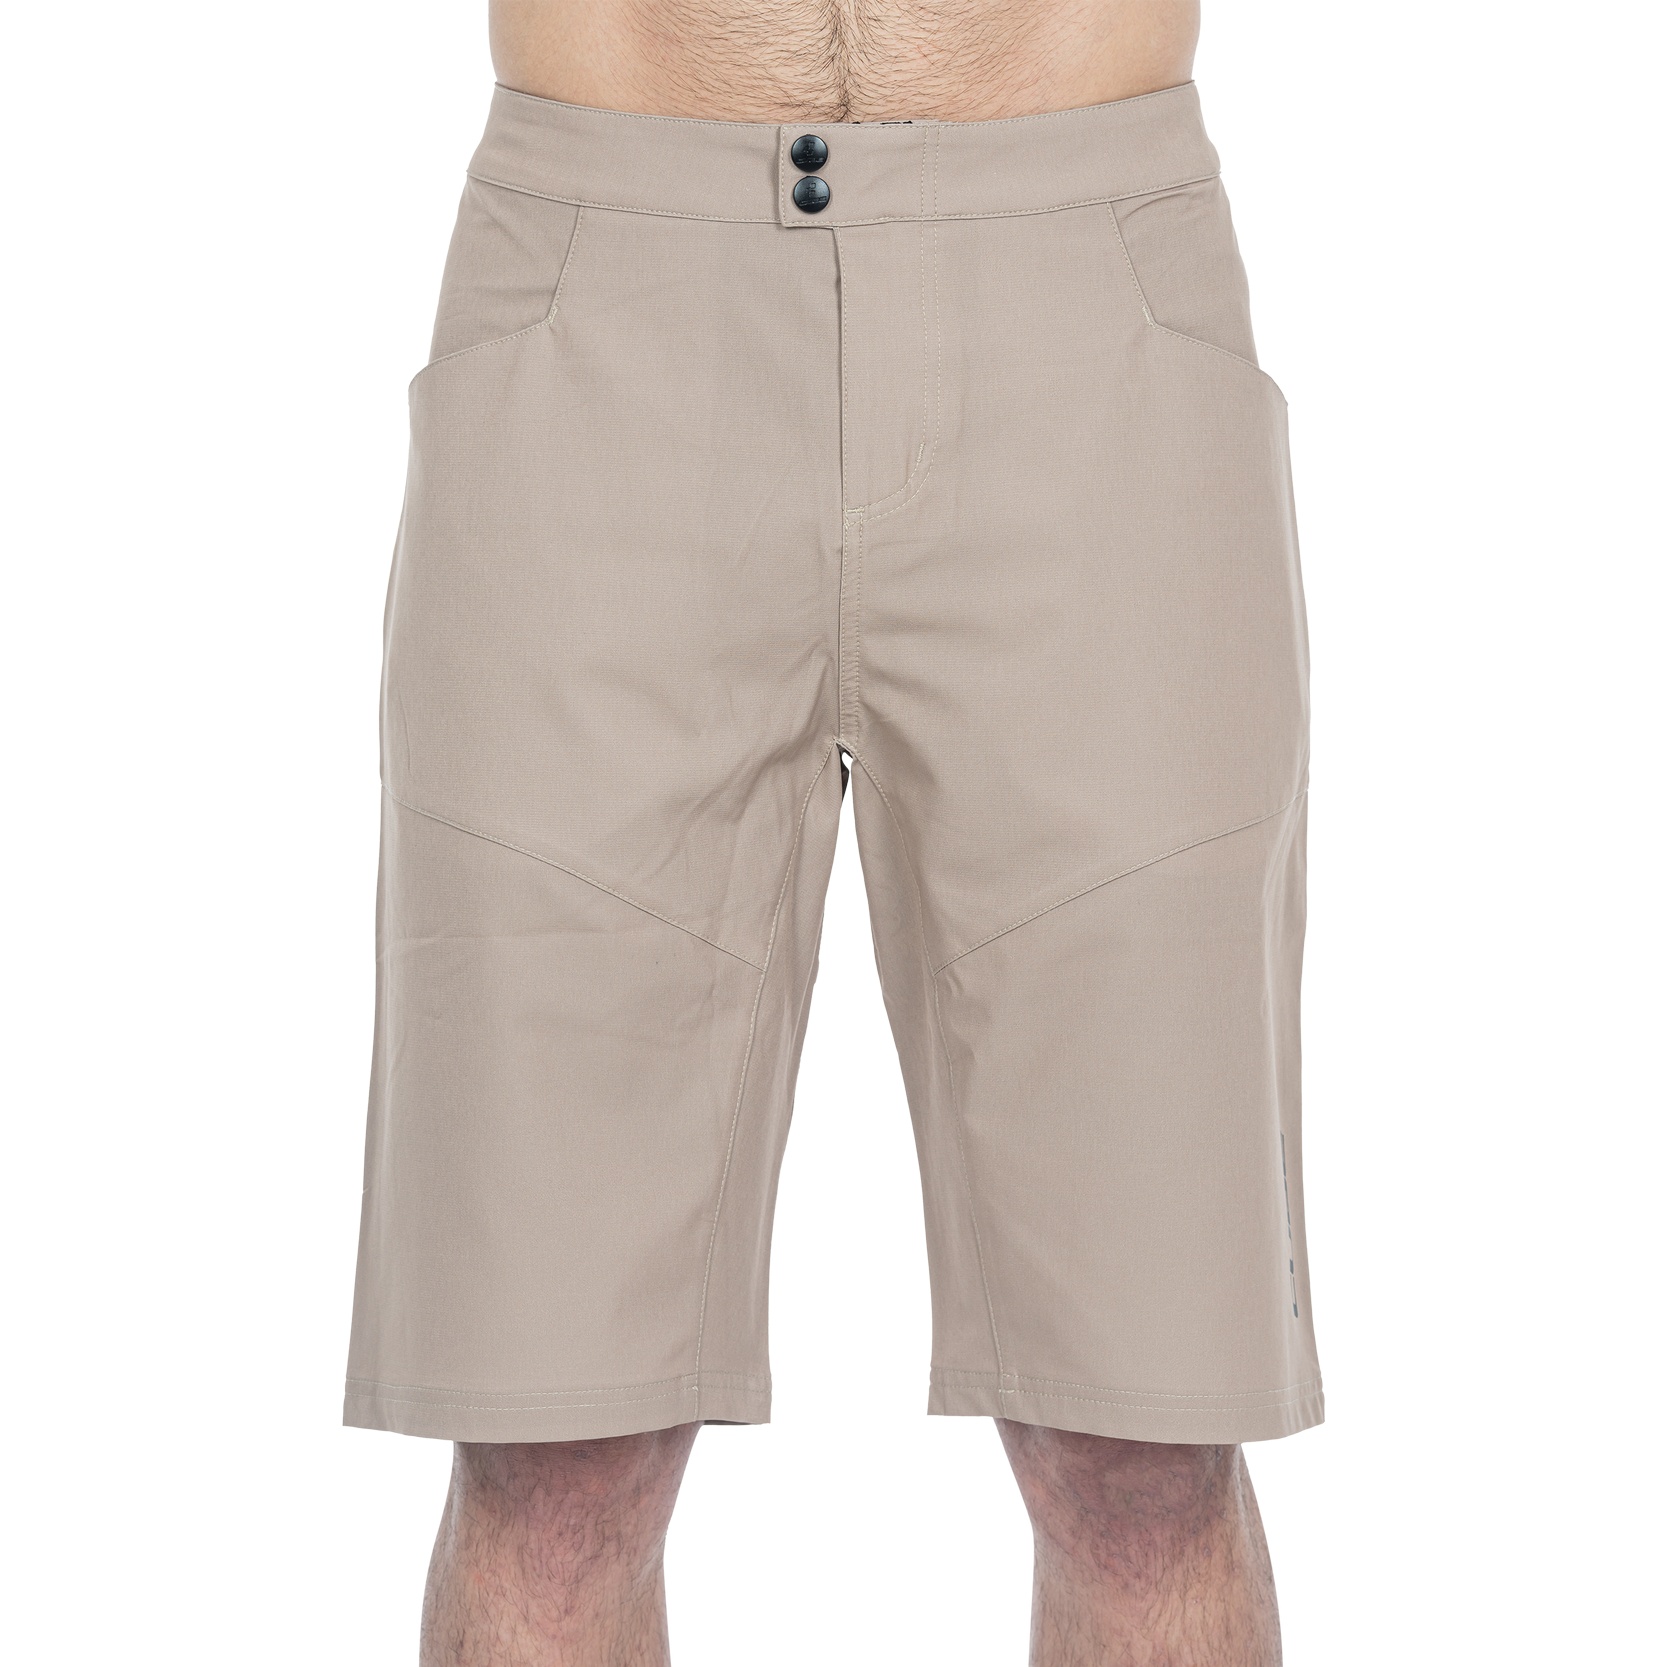 Produktbild von CUBE ATX CMPT Baggy Shorts Herren - sand